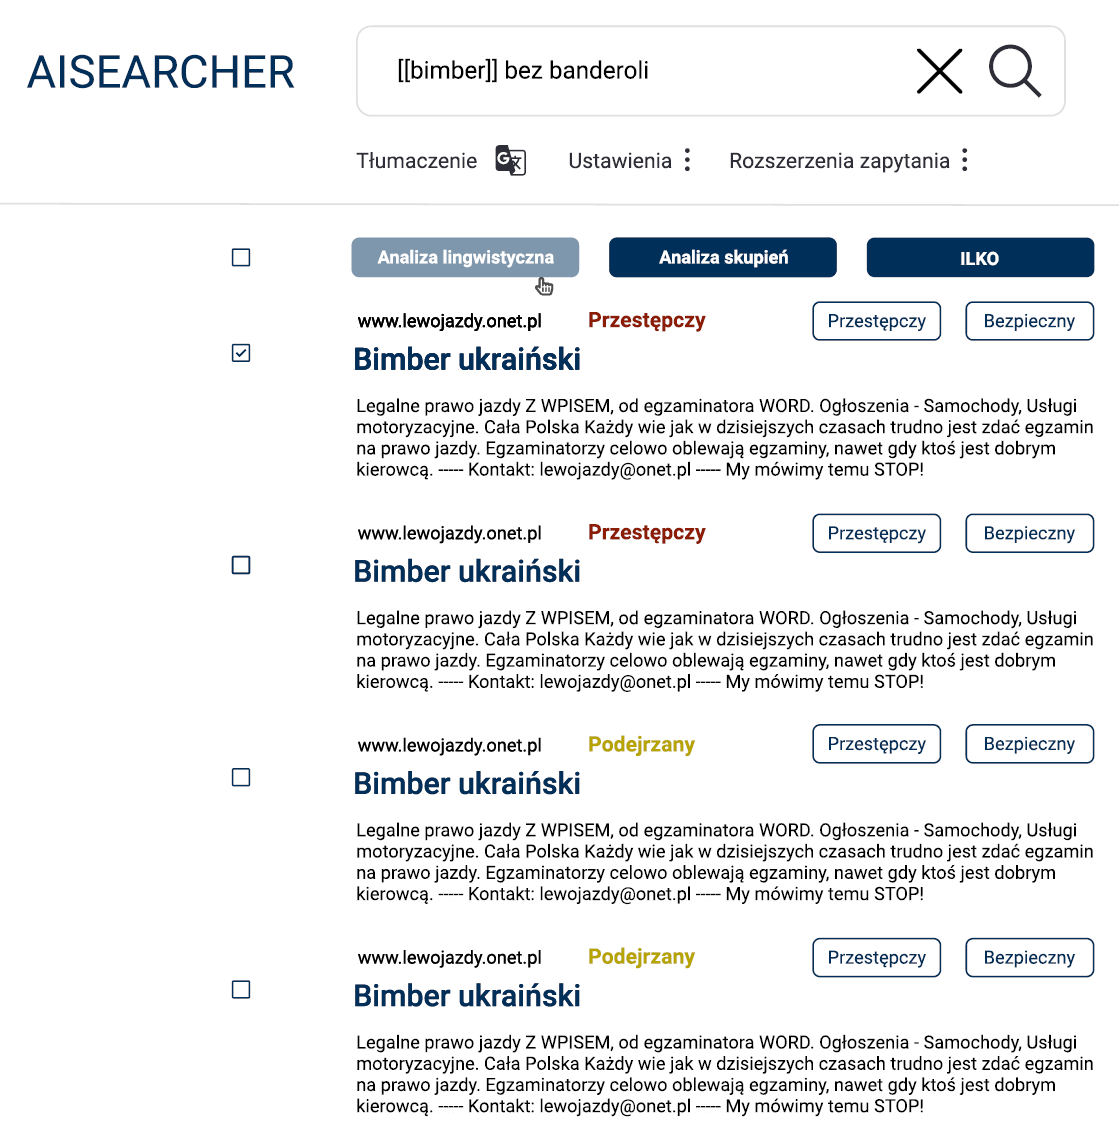 Zrzut ekranu systemu AISearcher